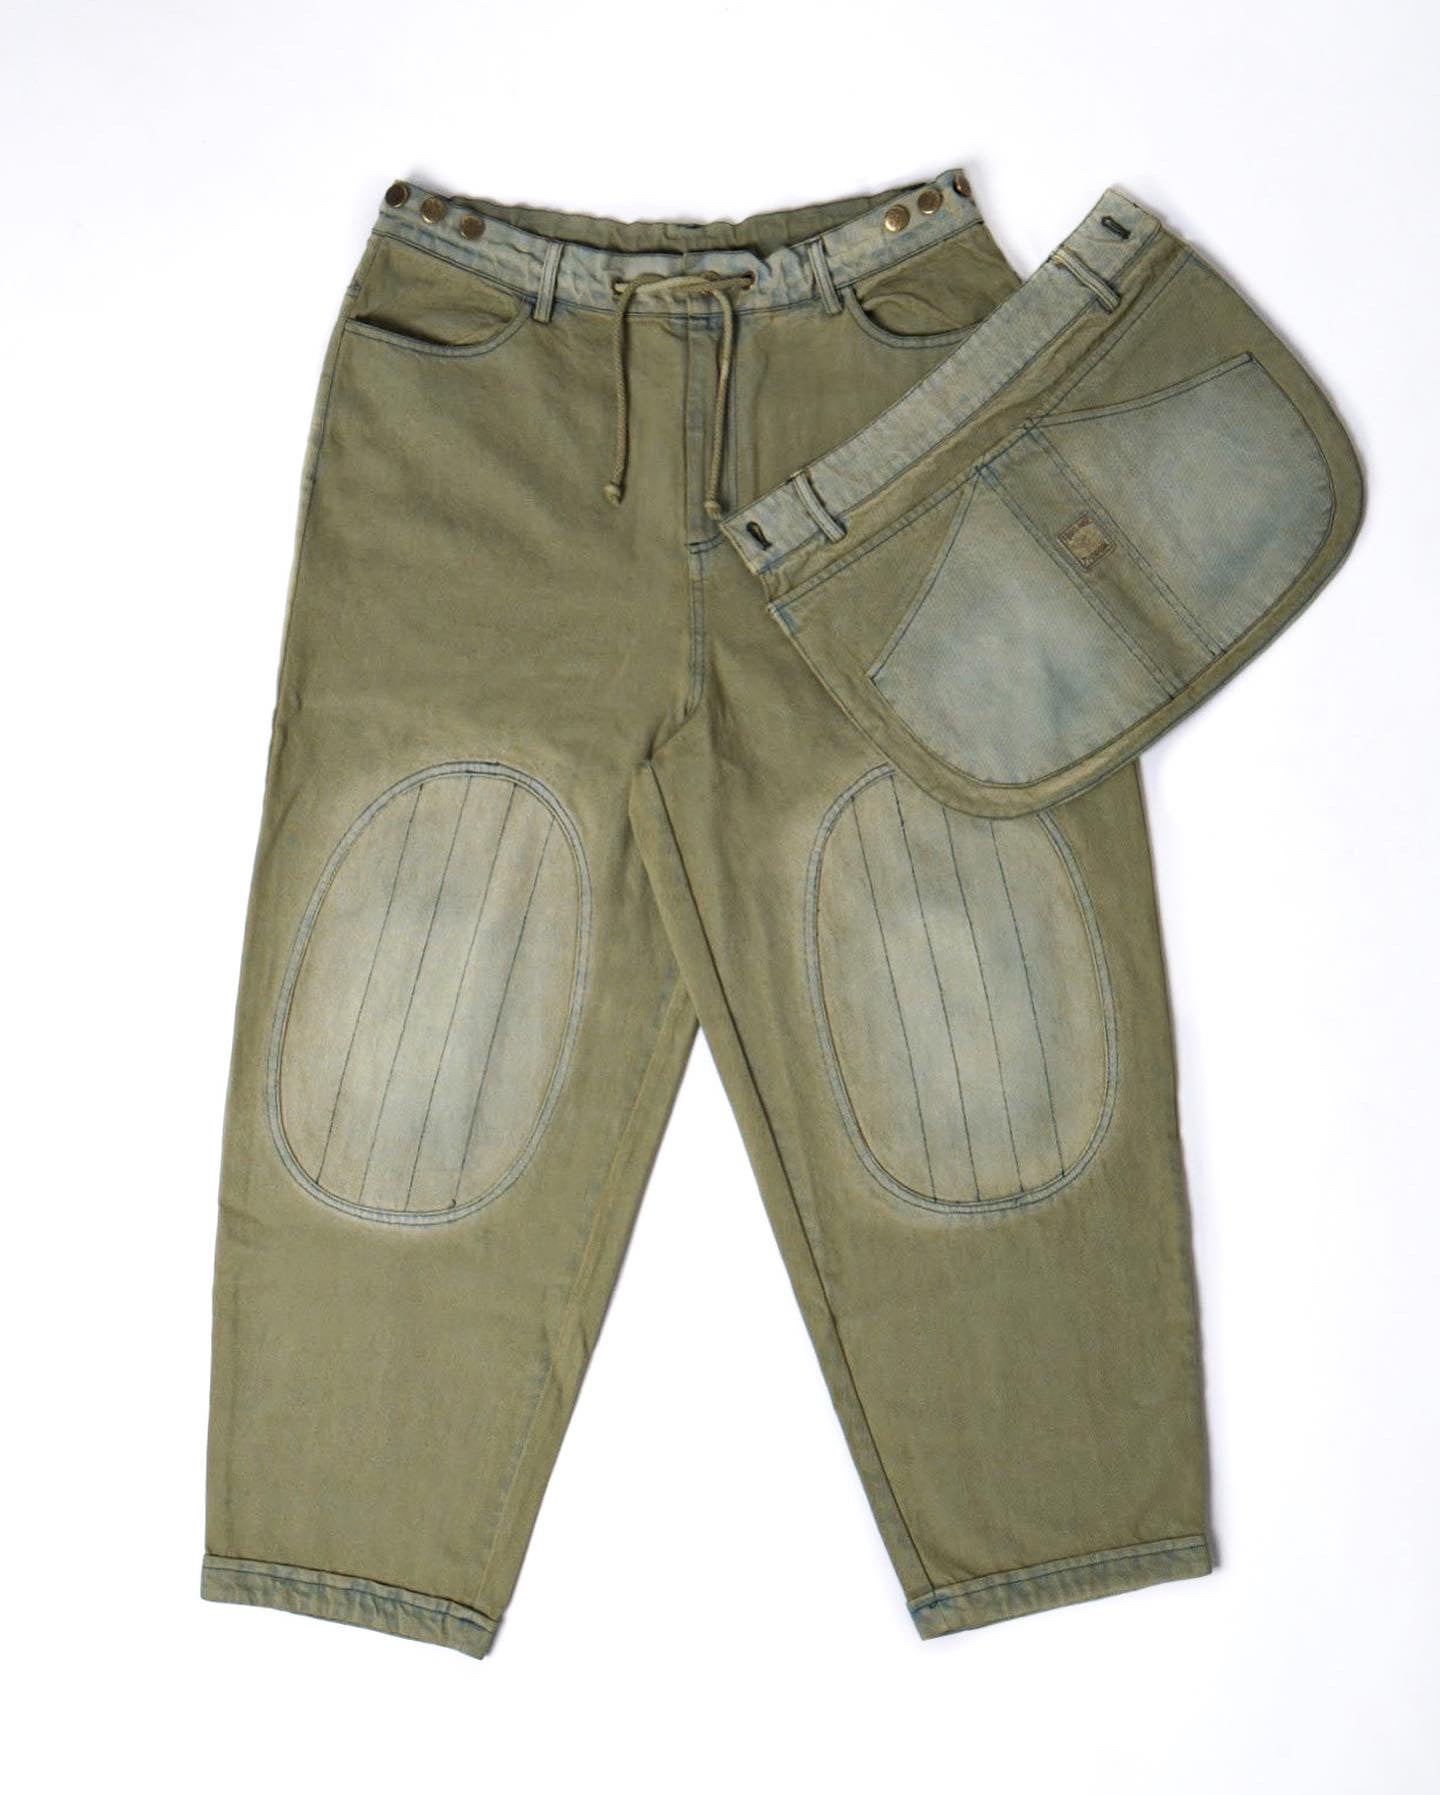 FootlooseTycoon Front Pockets Distressed Denim Work Pants